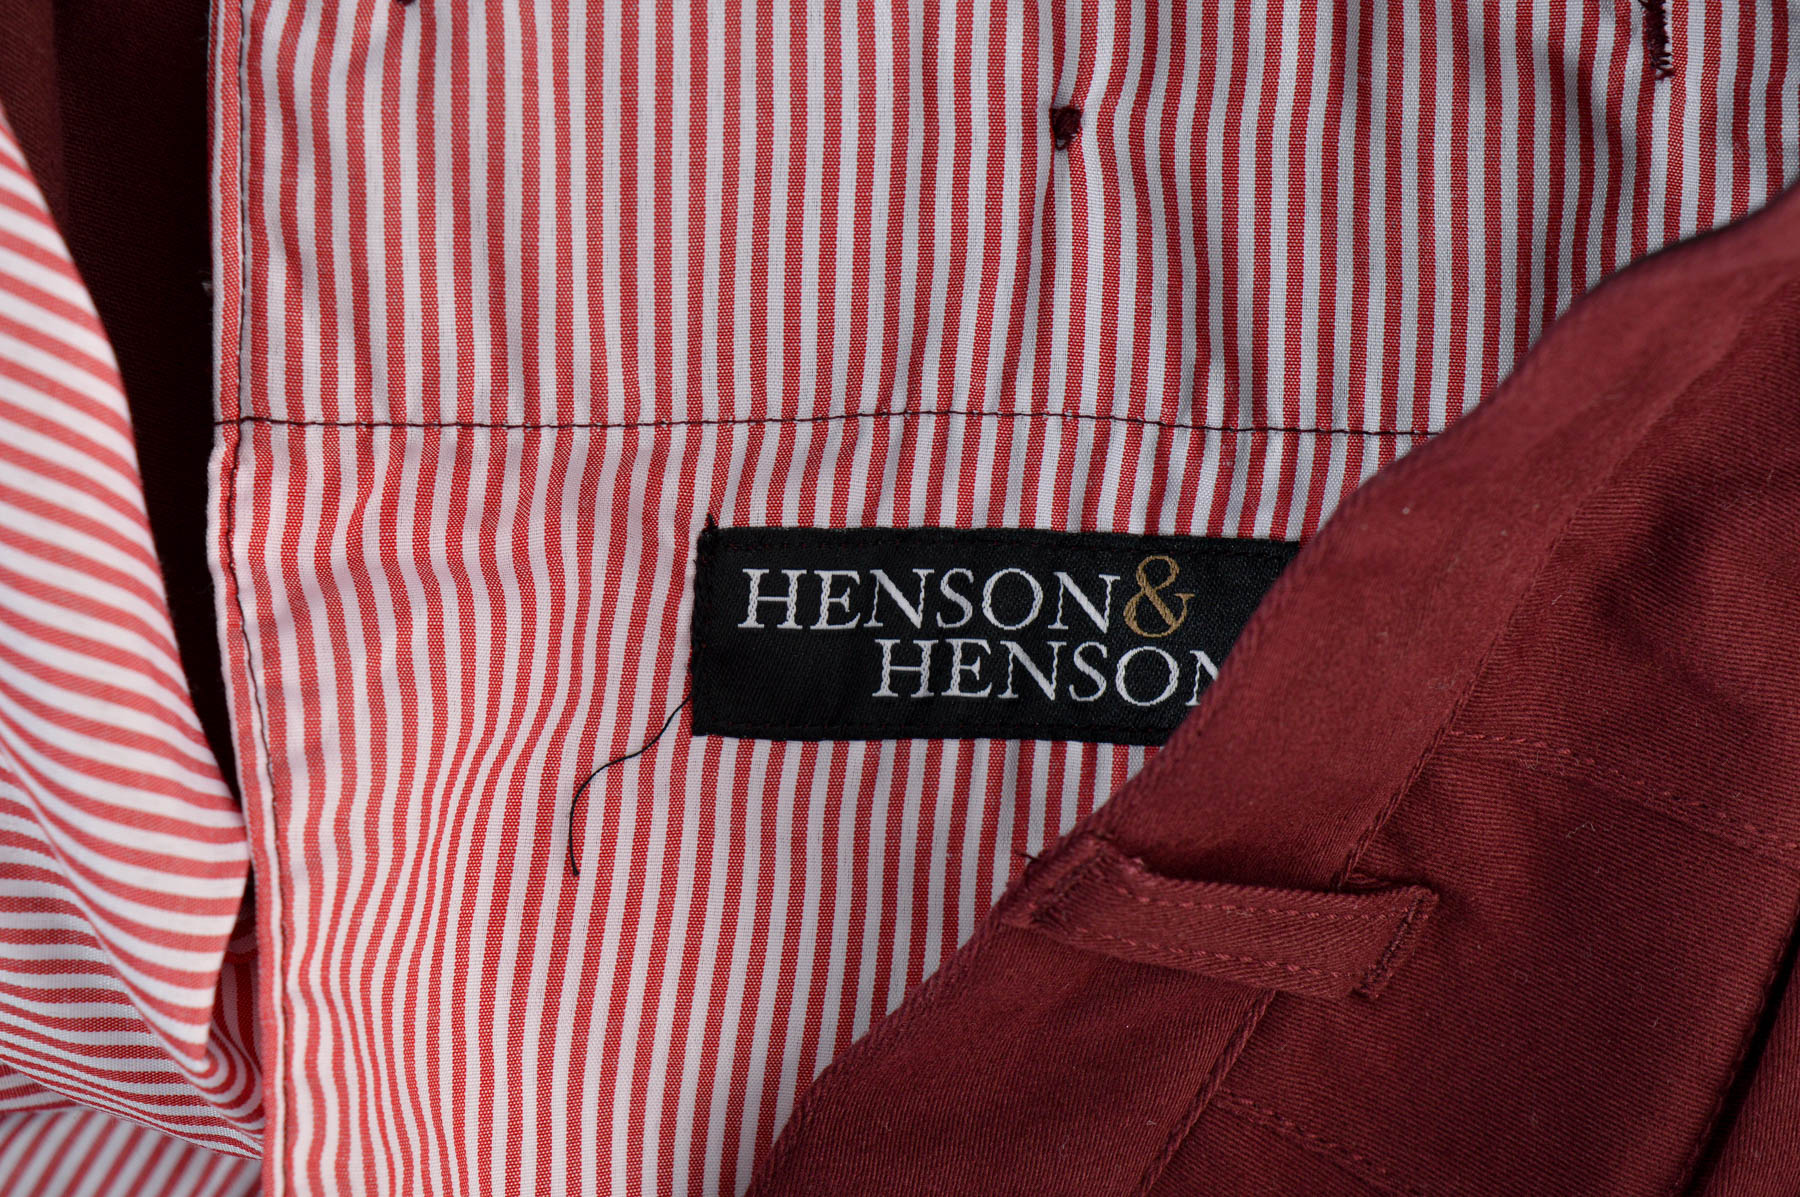 Men's trousers - HENSON & HENSON - 2